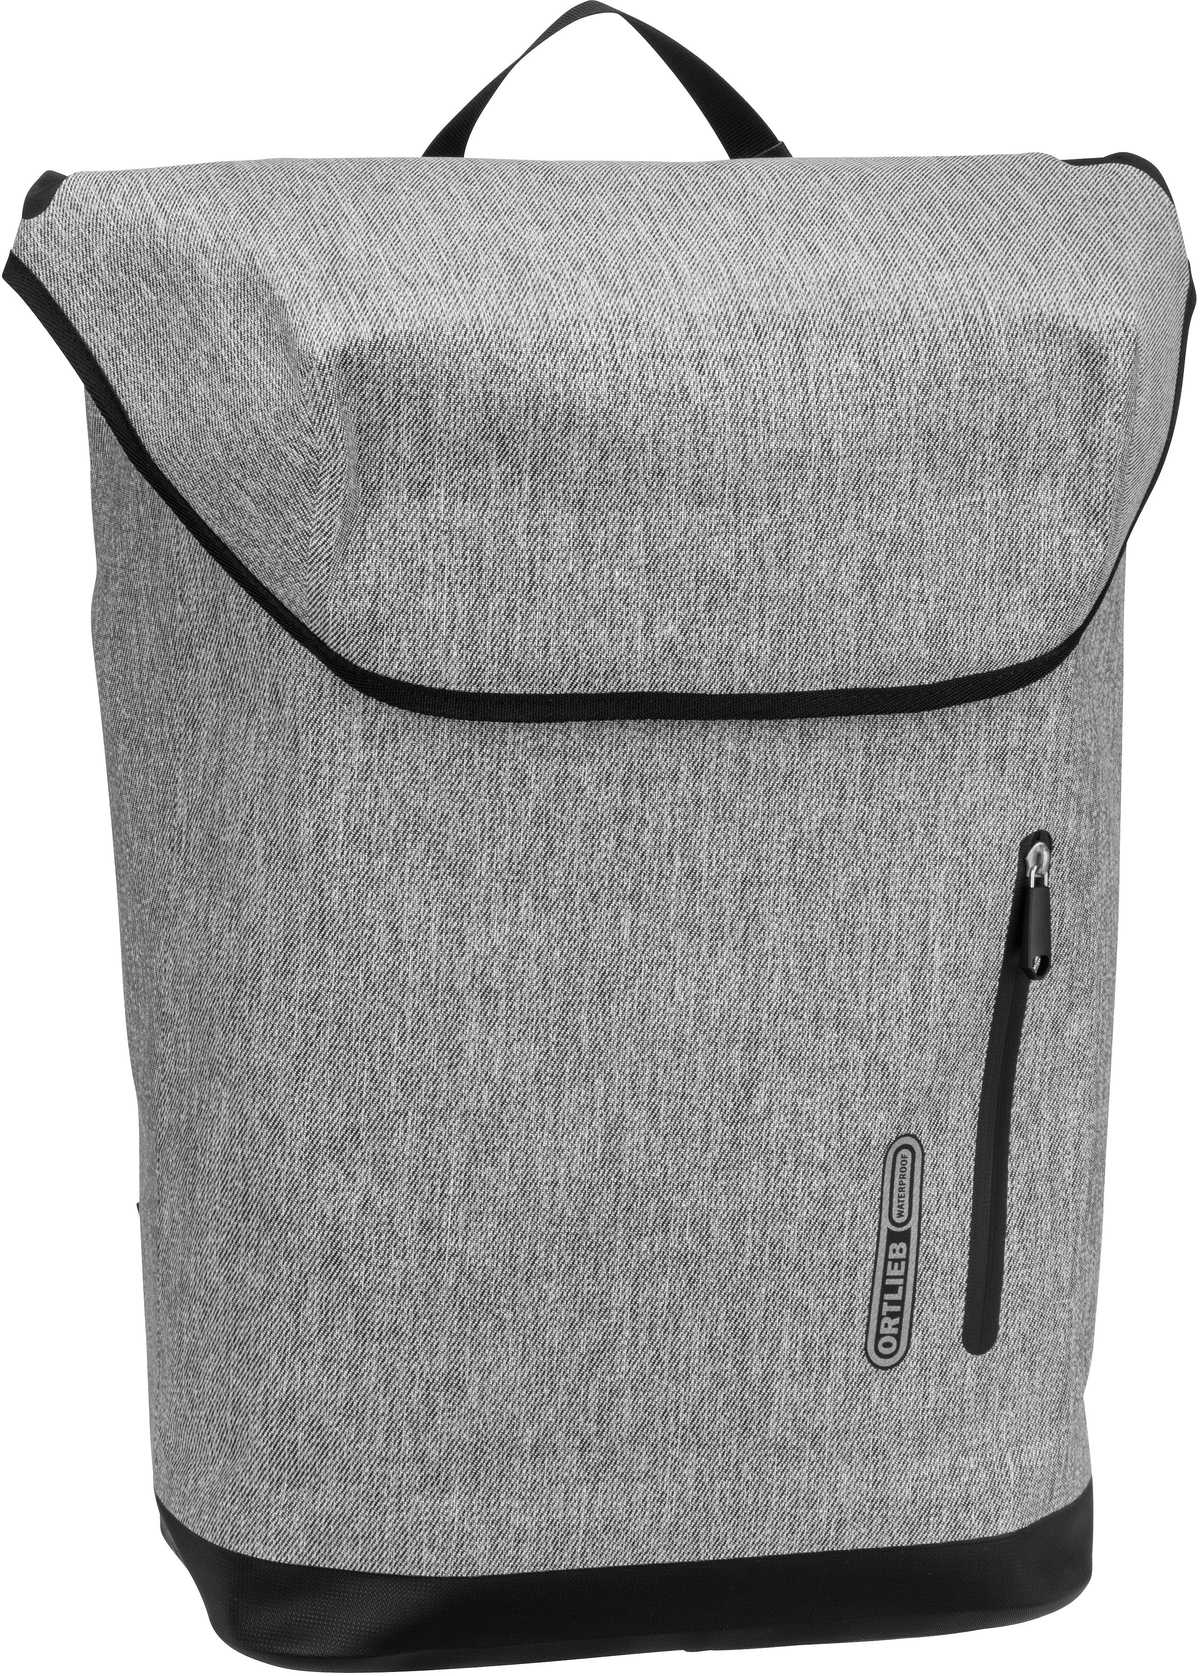 ORTLIEB Soulo  in Grau (25 Liter), Rucksack / Backpack